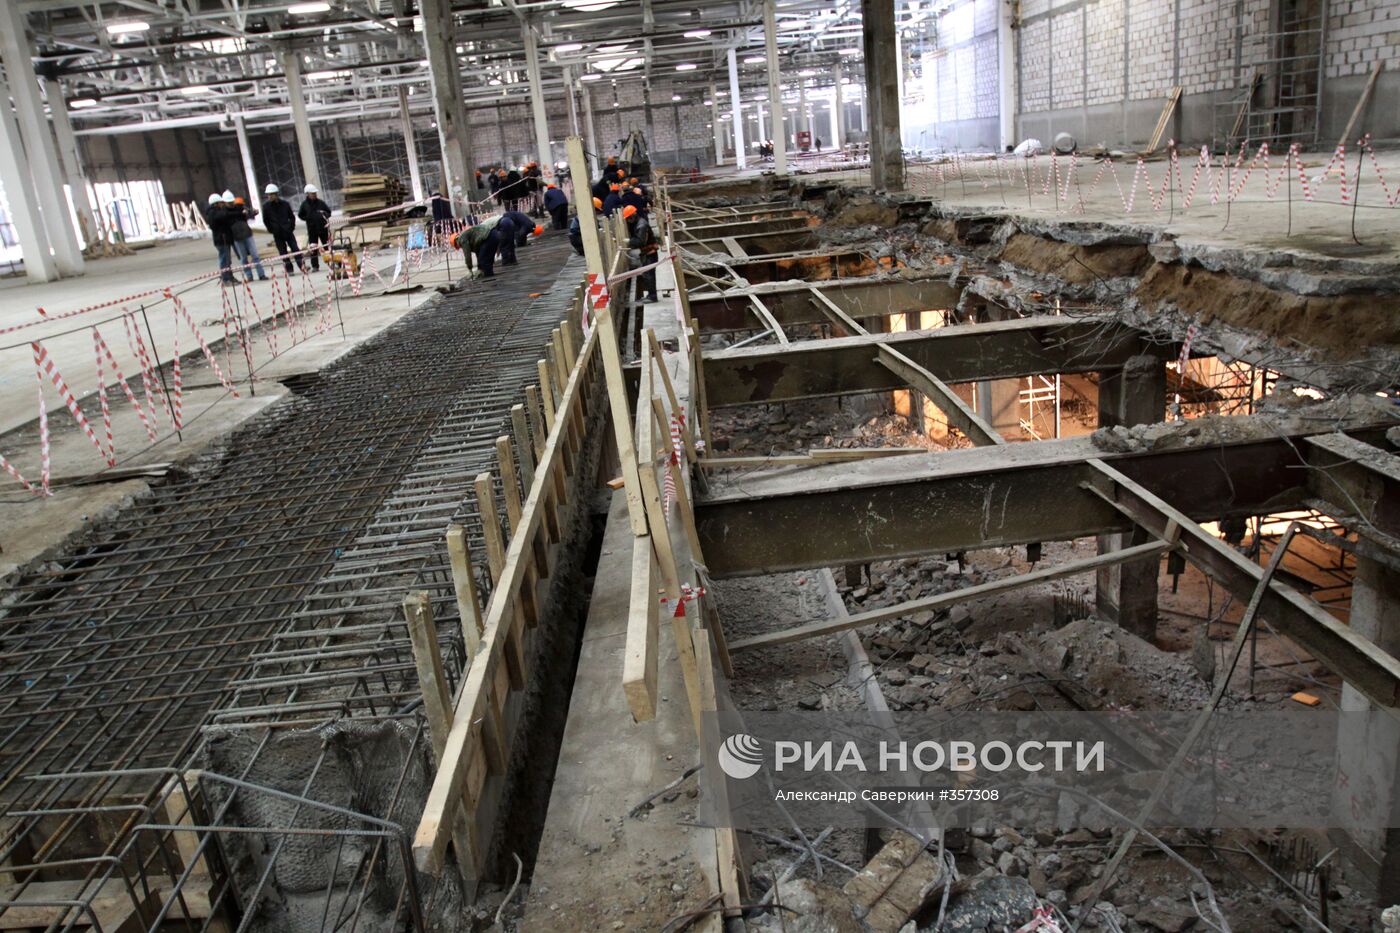 Реконструкция промзоны на территории бывшего ОАО "Москвич"